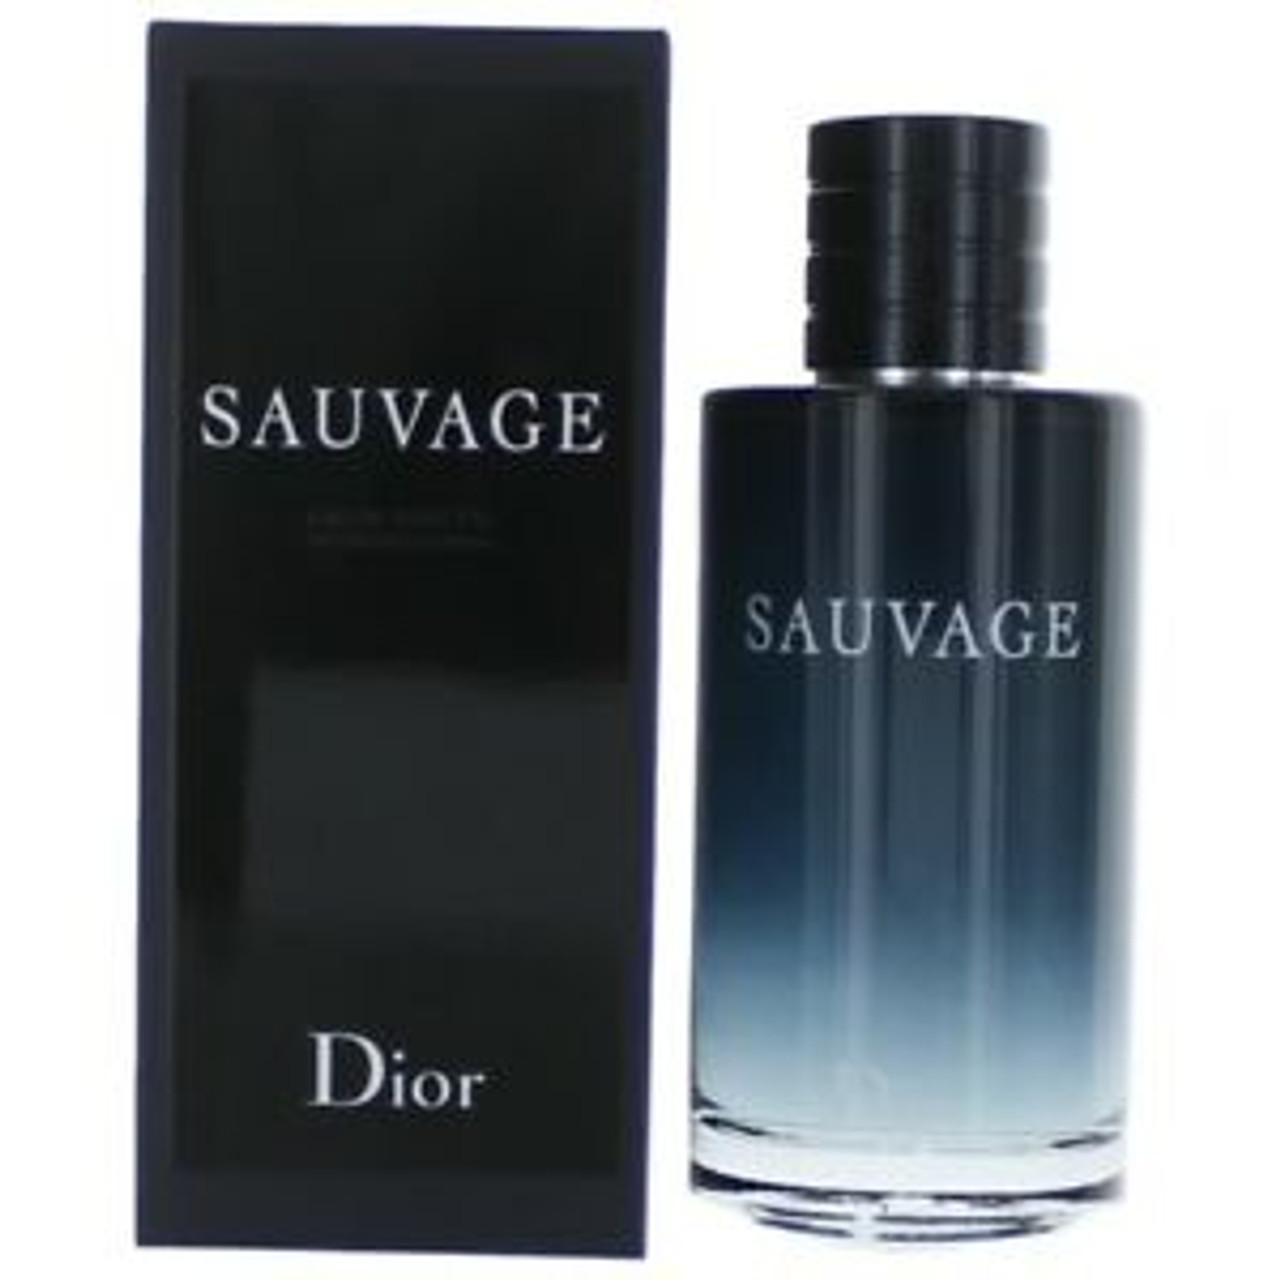 sauvage dior price 200ml